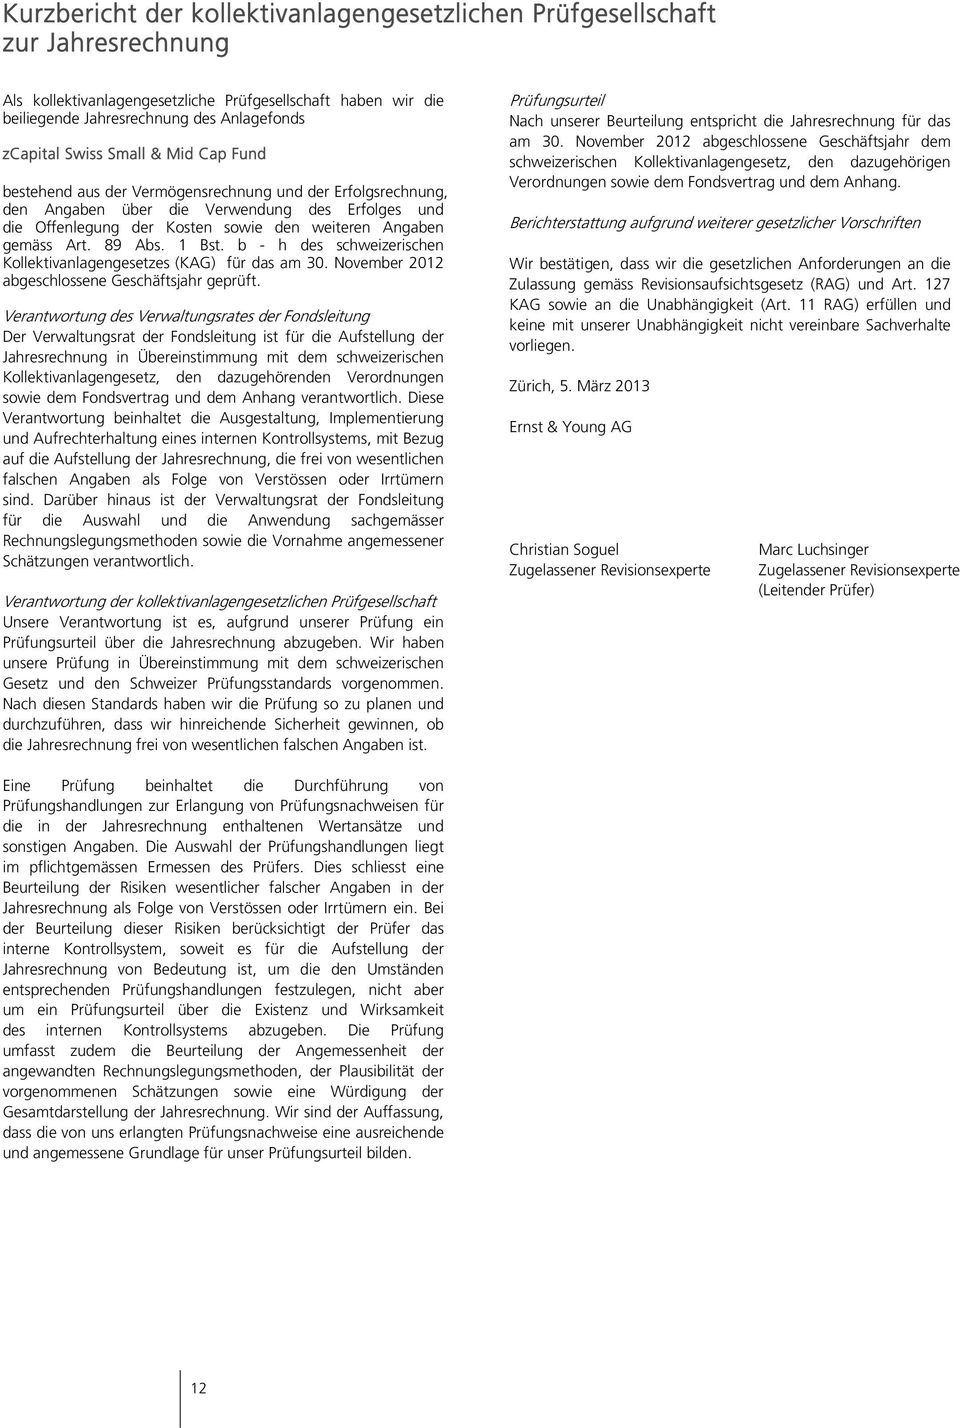 Art. 89 Abs. 1 Bst. b - h des schweizerischen Kollektivanlagengesetzes (KAG) für das am 30. November 2012 abgeschlossene Geschäftsjahr geprüft.